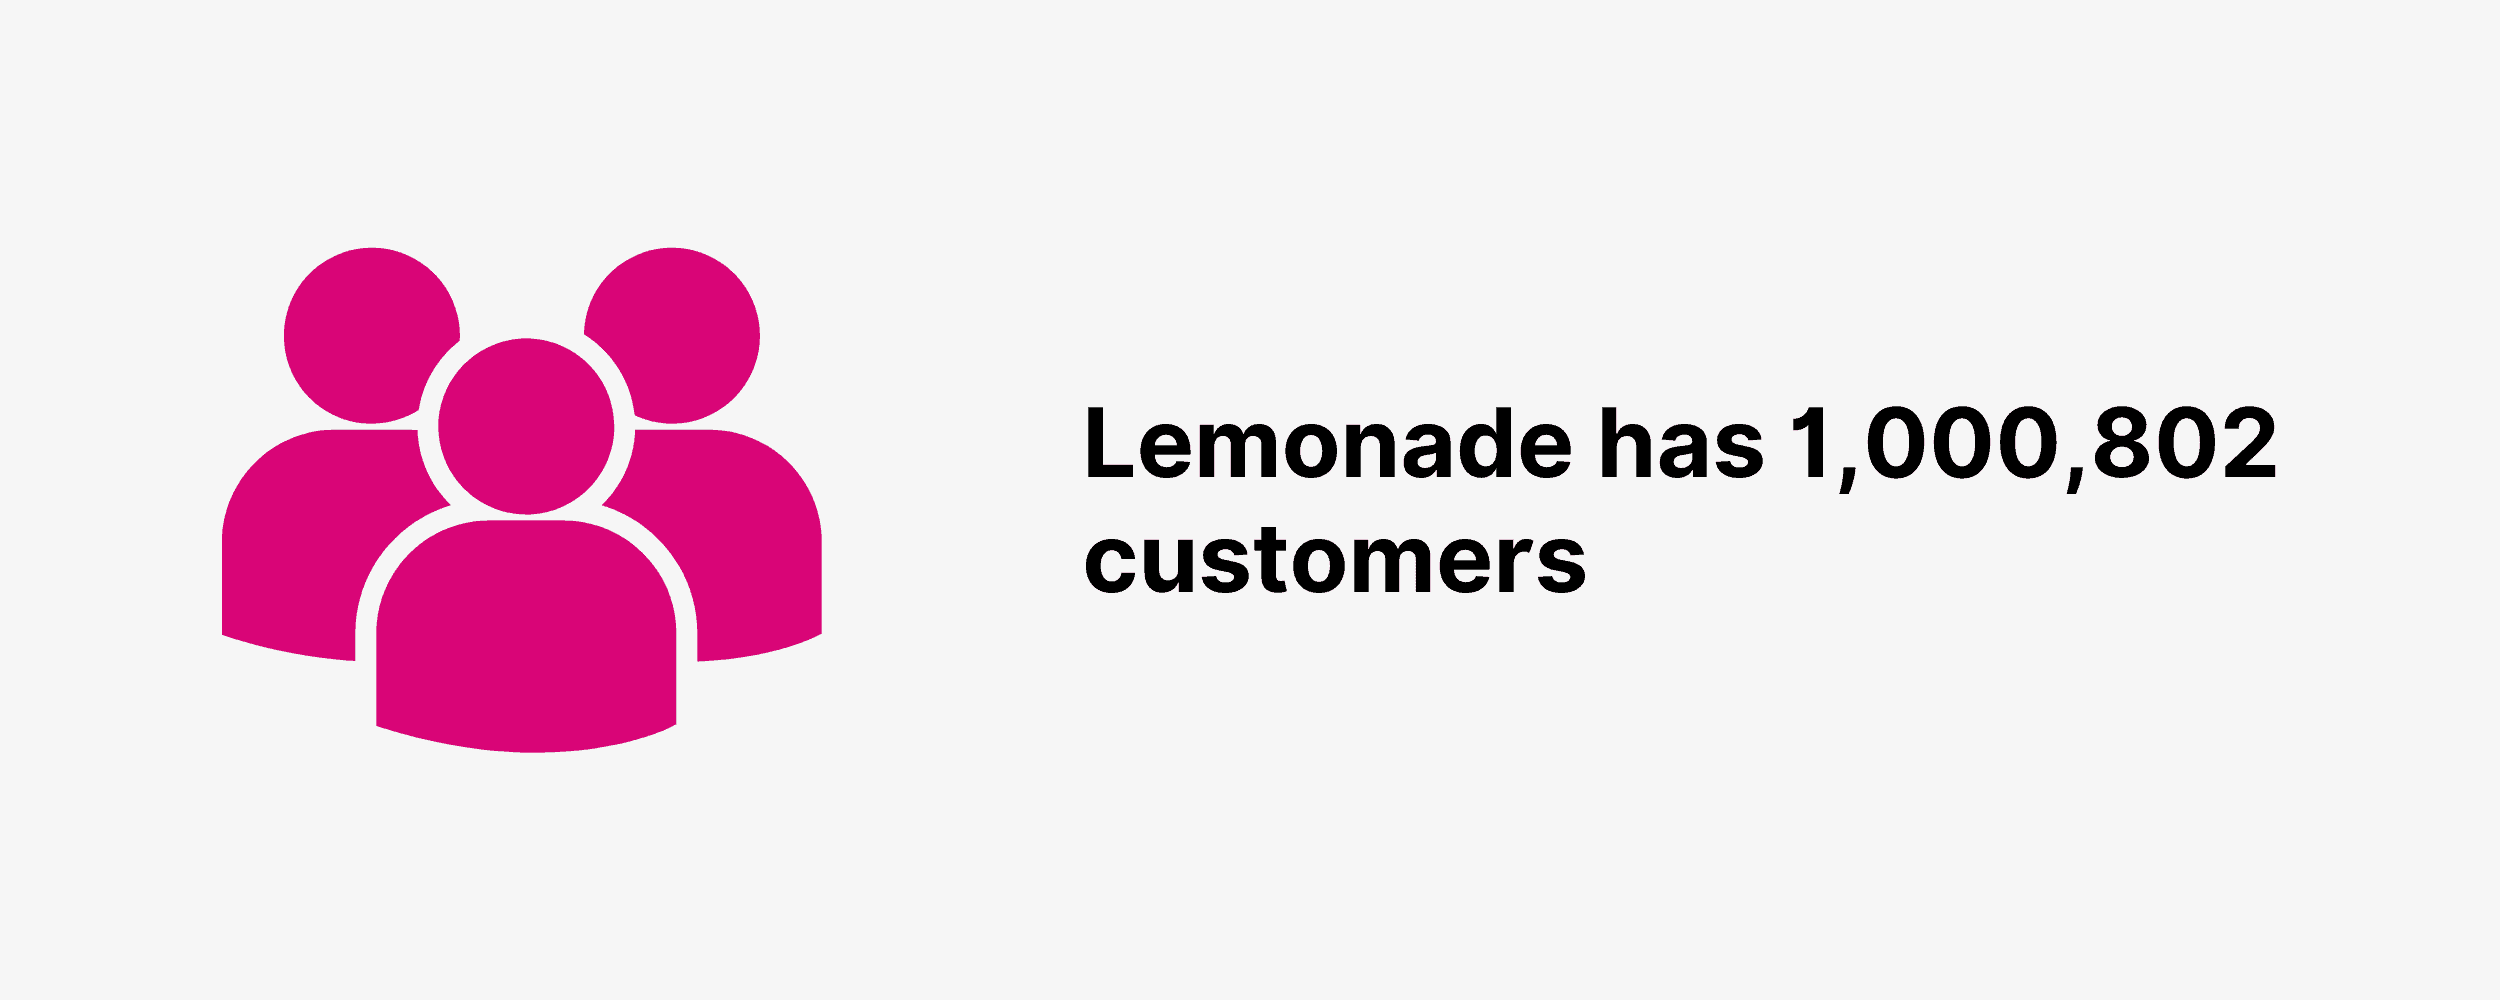 Lemonade has 1,000,802 customers